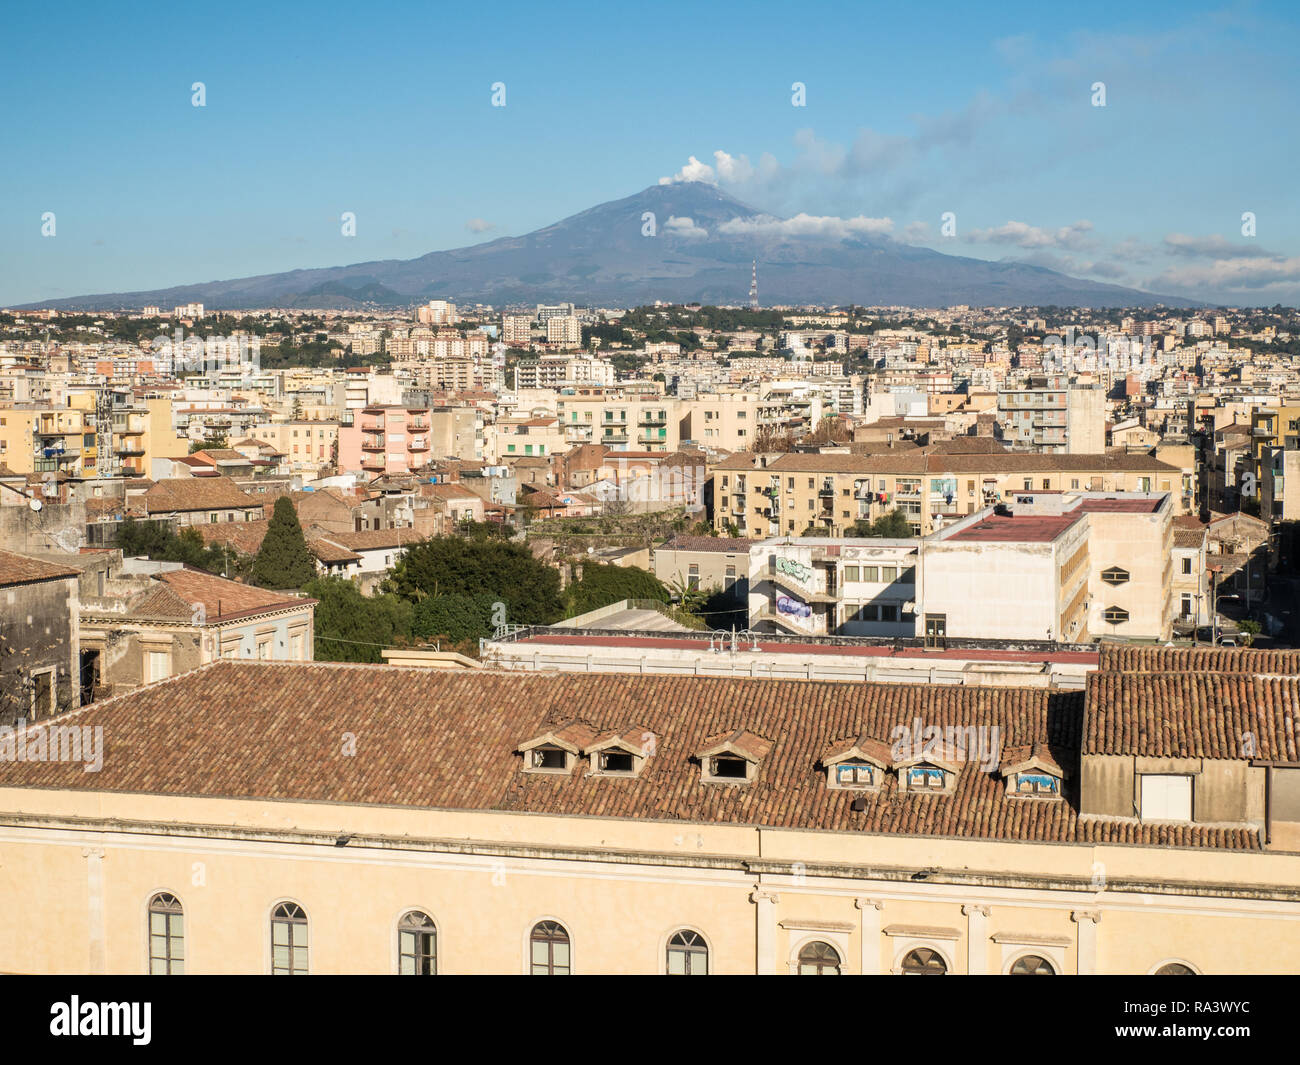 Catania skyline looking towards Mount Etna, a active volcano, Island of Sicily, Italy Stock Photo